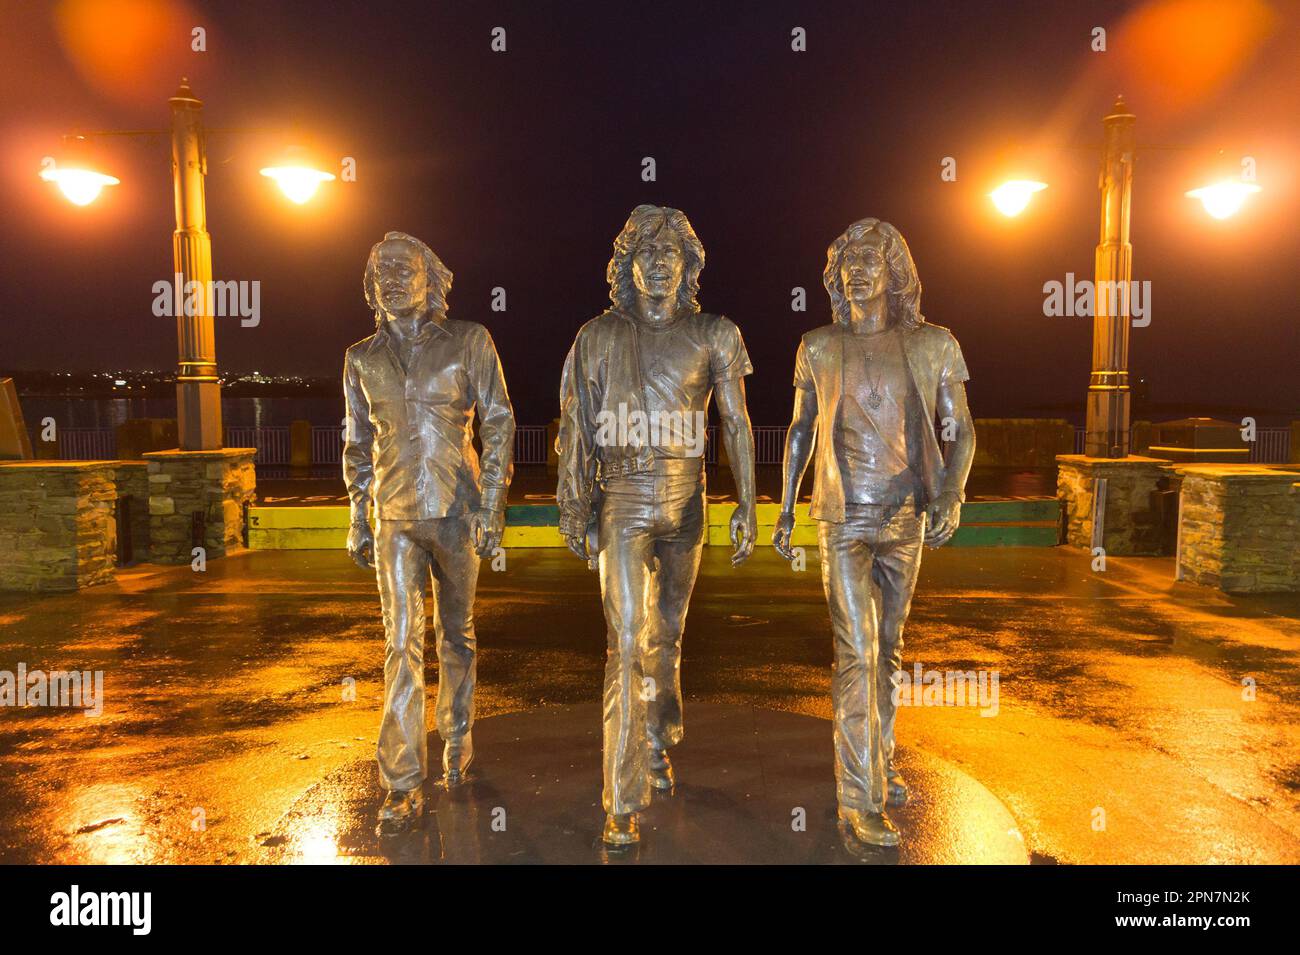 Statue de bronze du groupe pop Bee Gees par Andy Edwards, 2021, Loch Promenade, Douglas, île de Man Banque D'Images